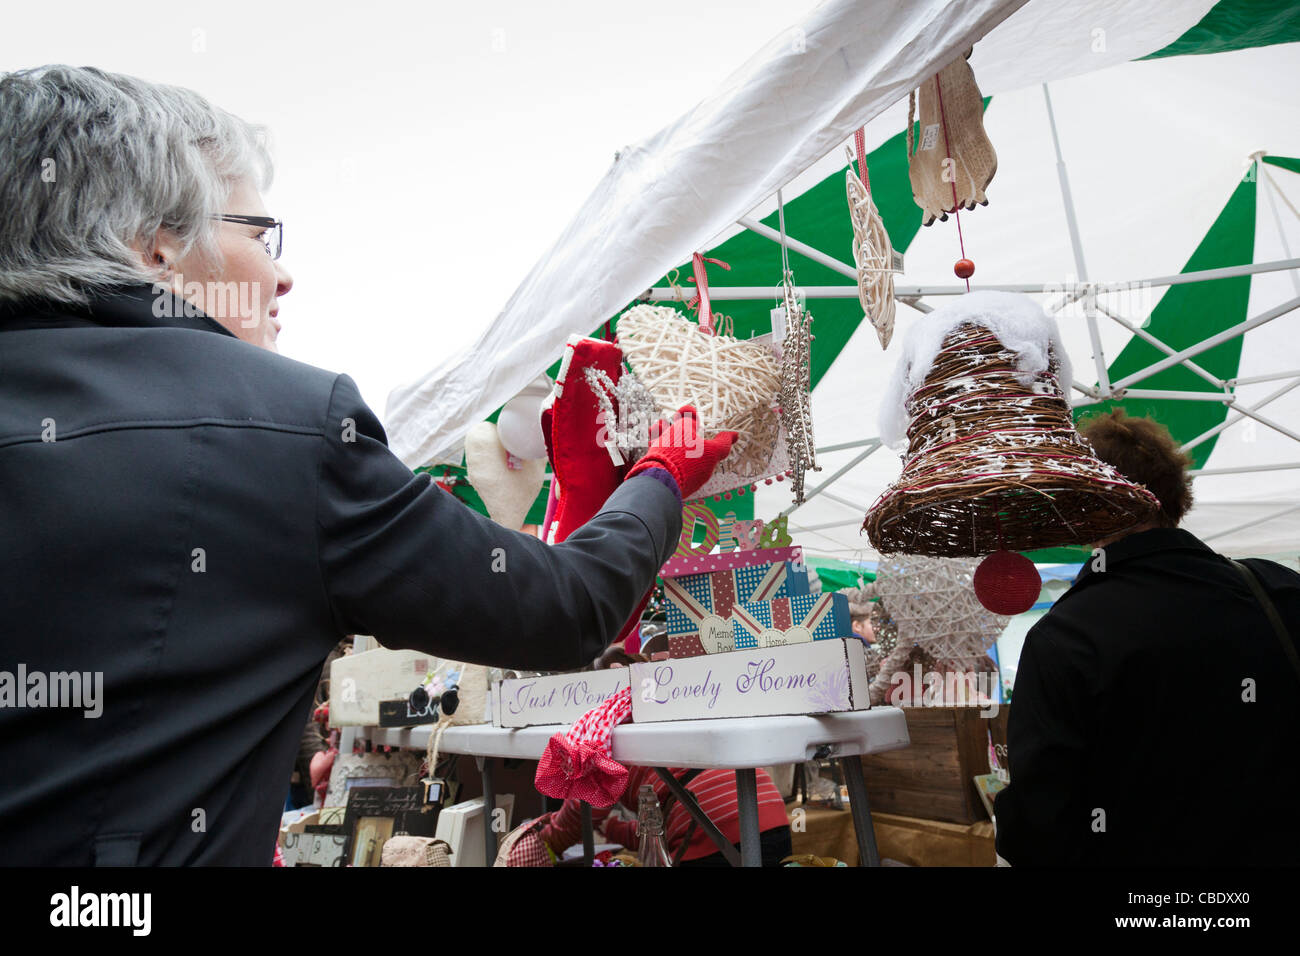 Frau untersucht Weihnachtsschmuck auf einem Marktstand Weihnachten. Stockfoto